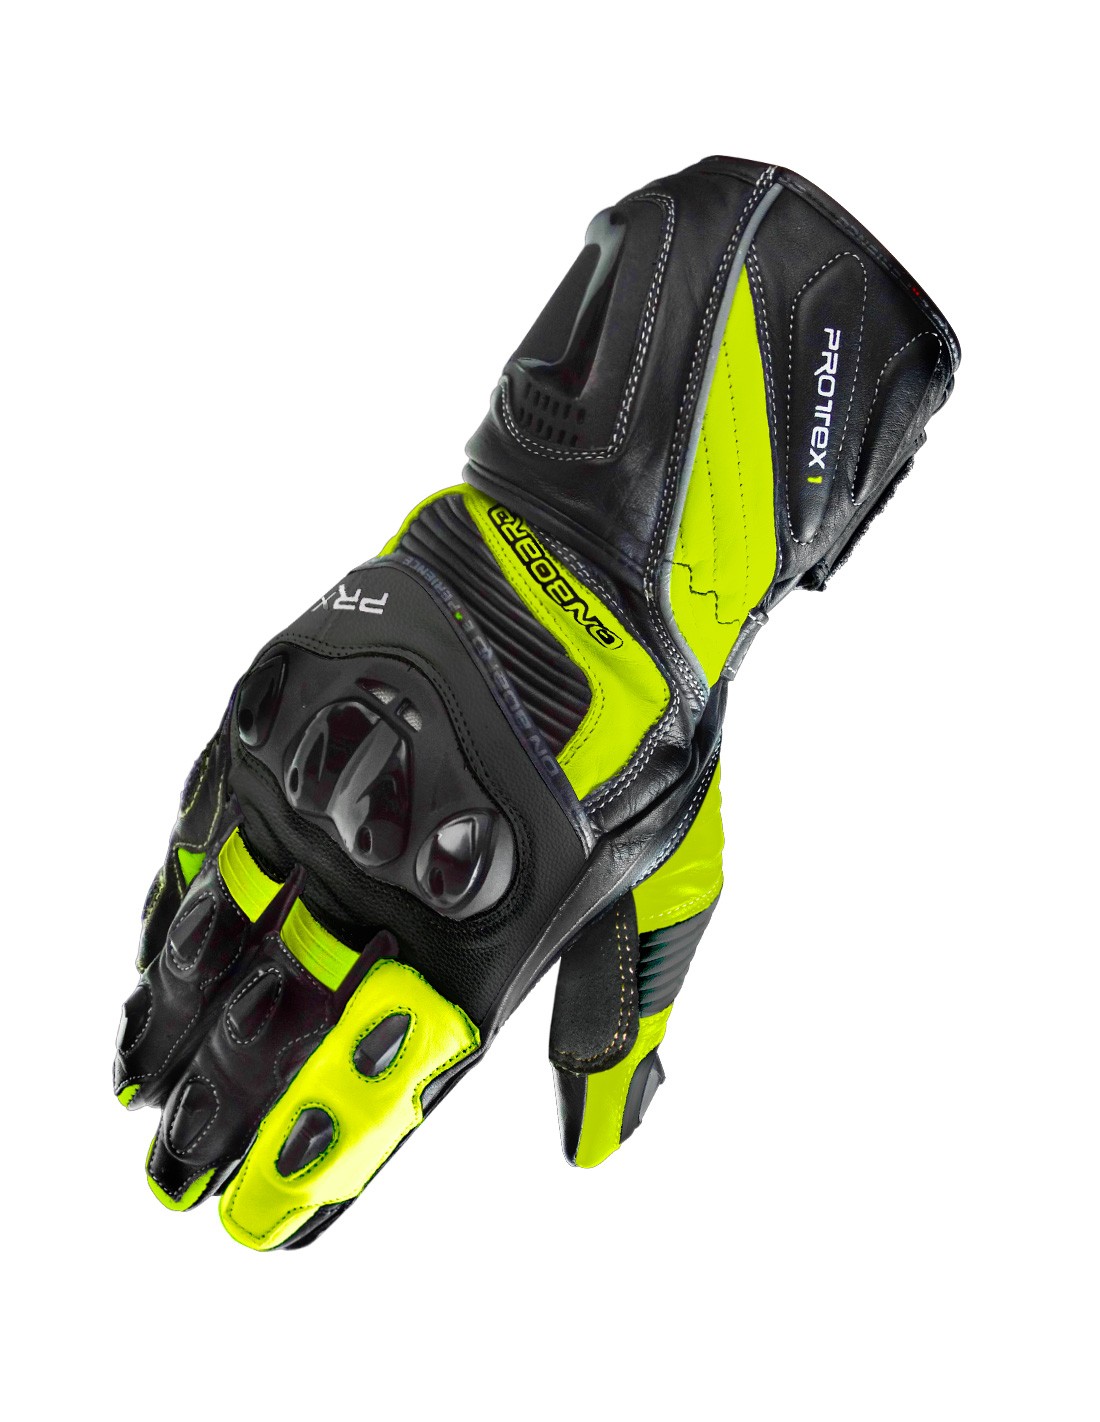 Excelentes y testados guantes homologados On Board PRX1 negro y fluor